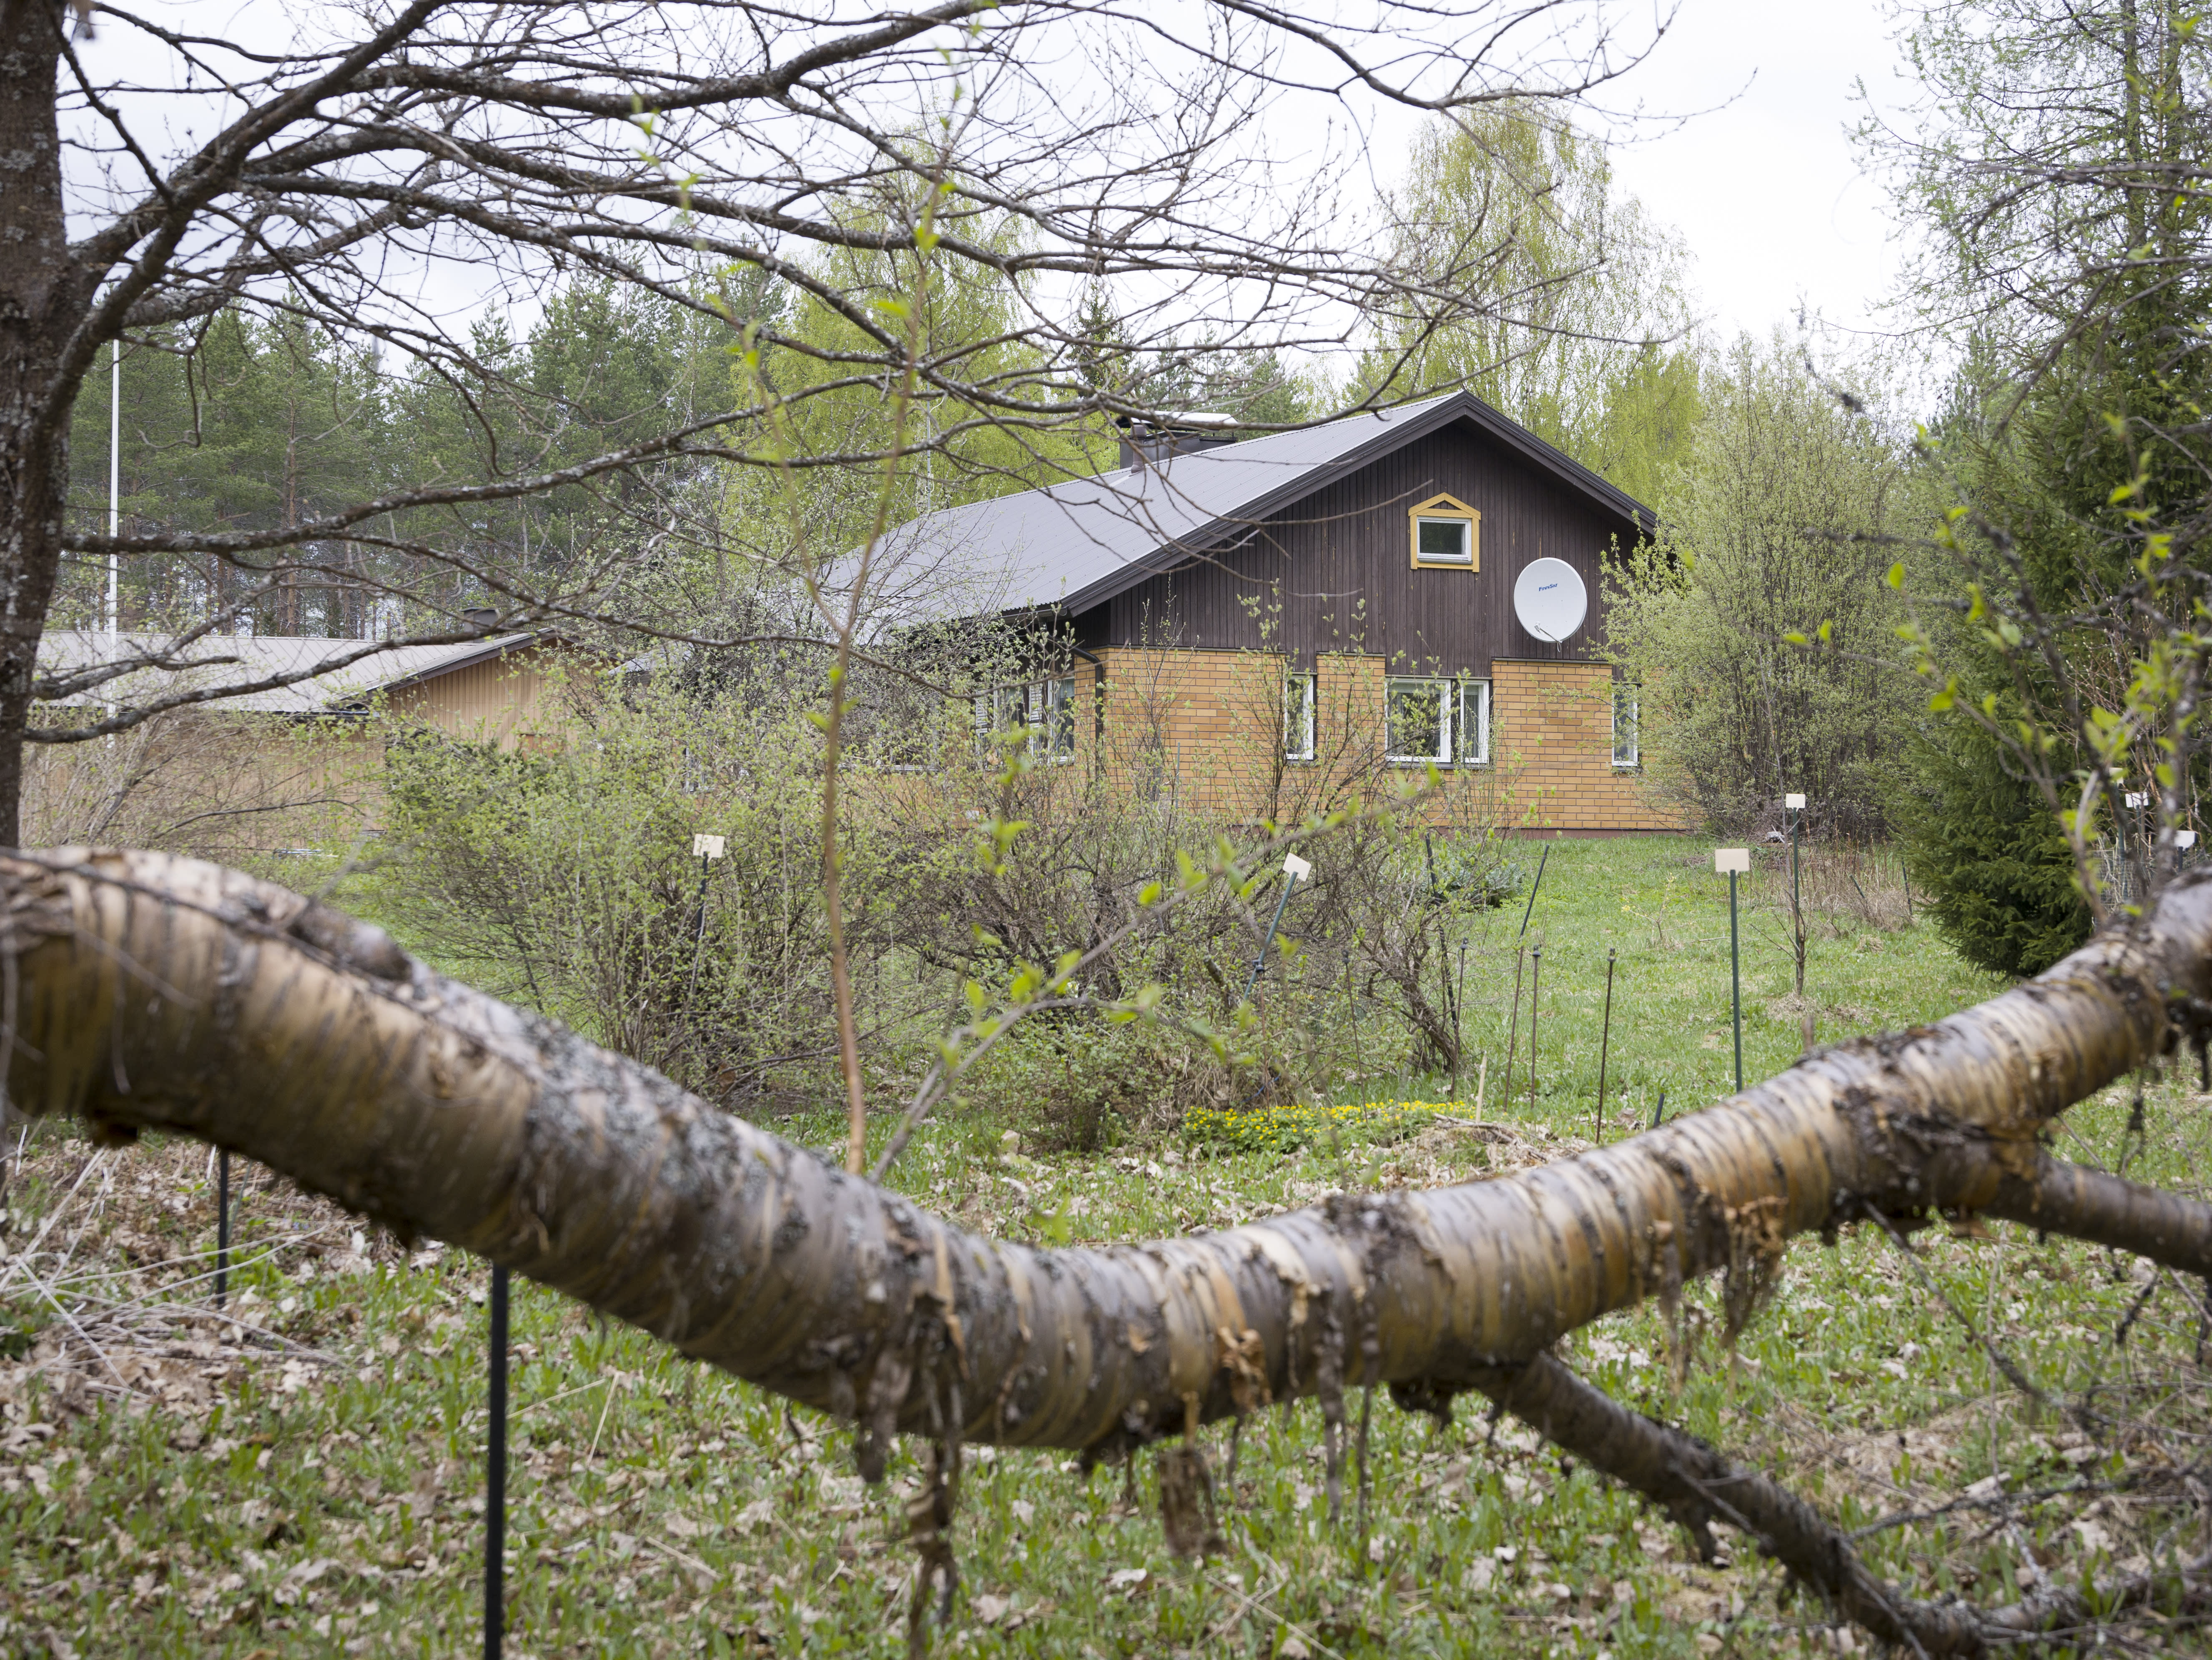 Услугата за недвижими имоти "Tinder style" търси наематели за празни селски къщи